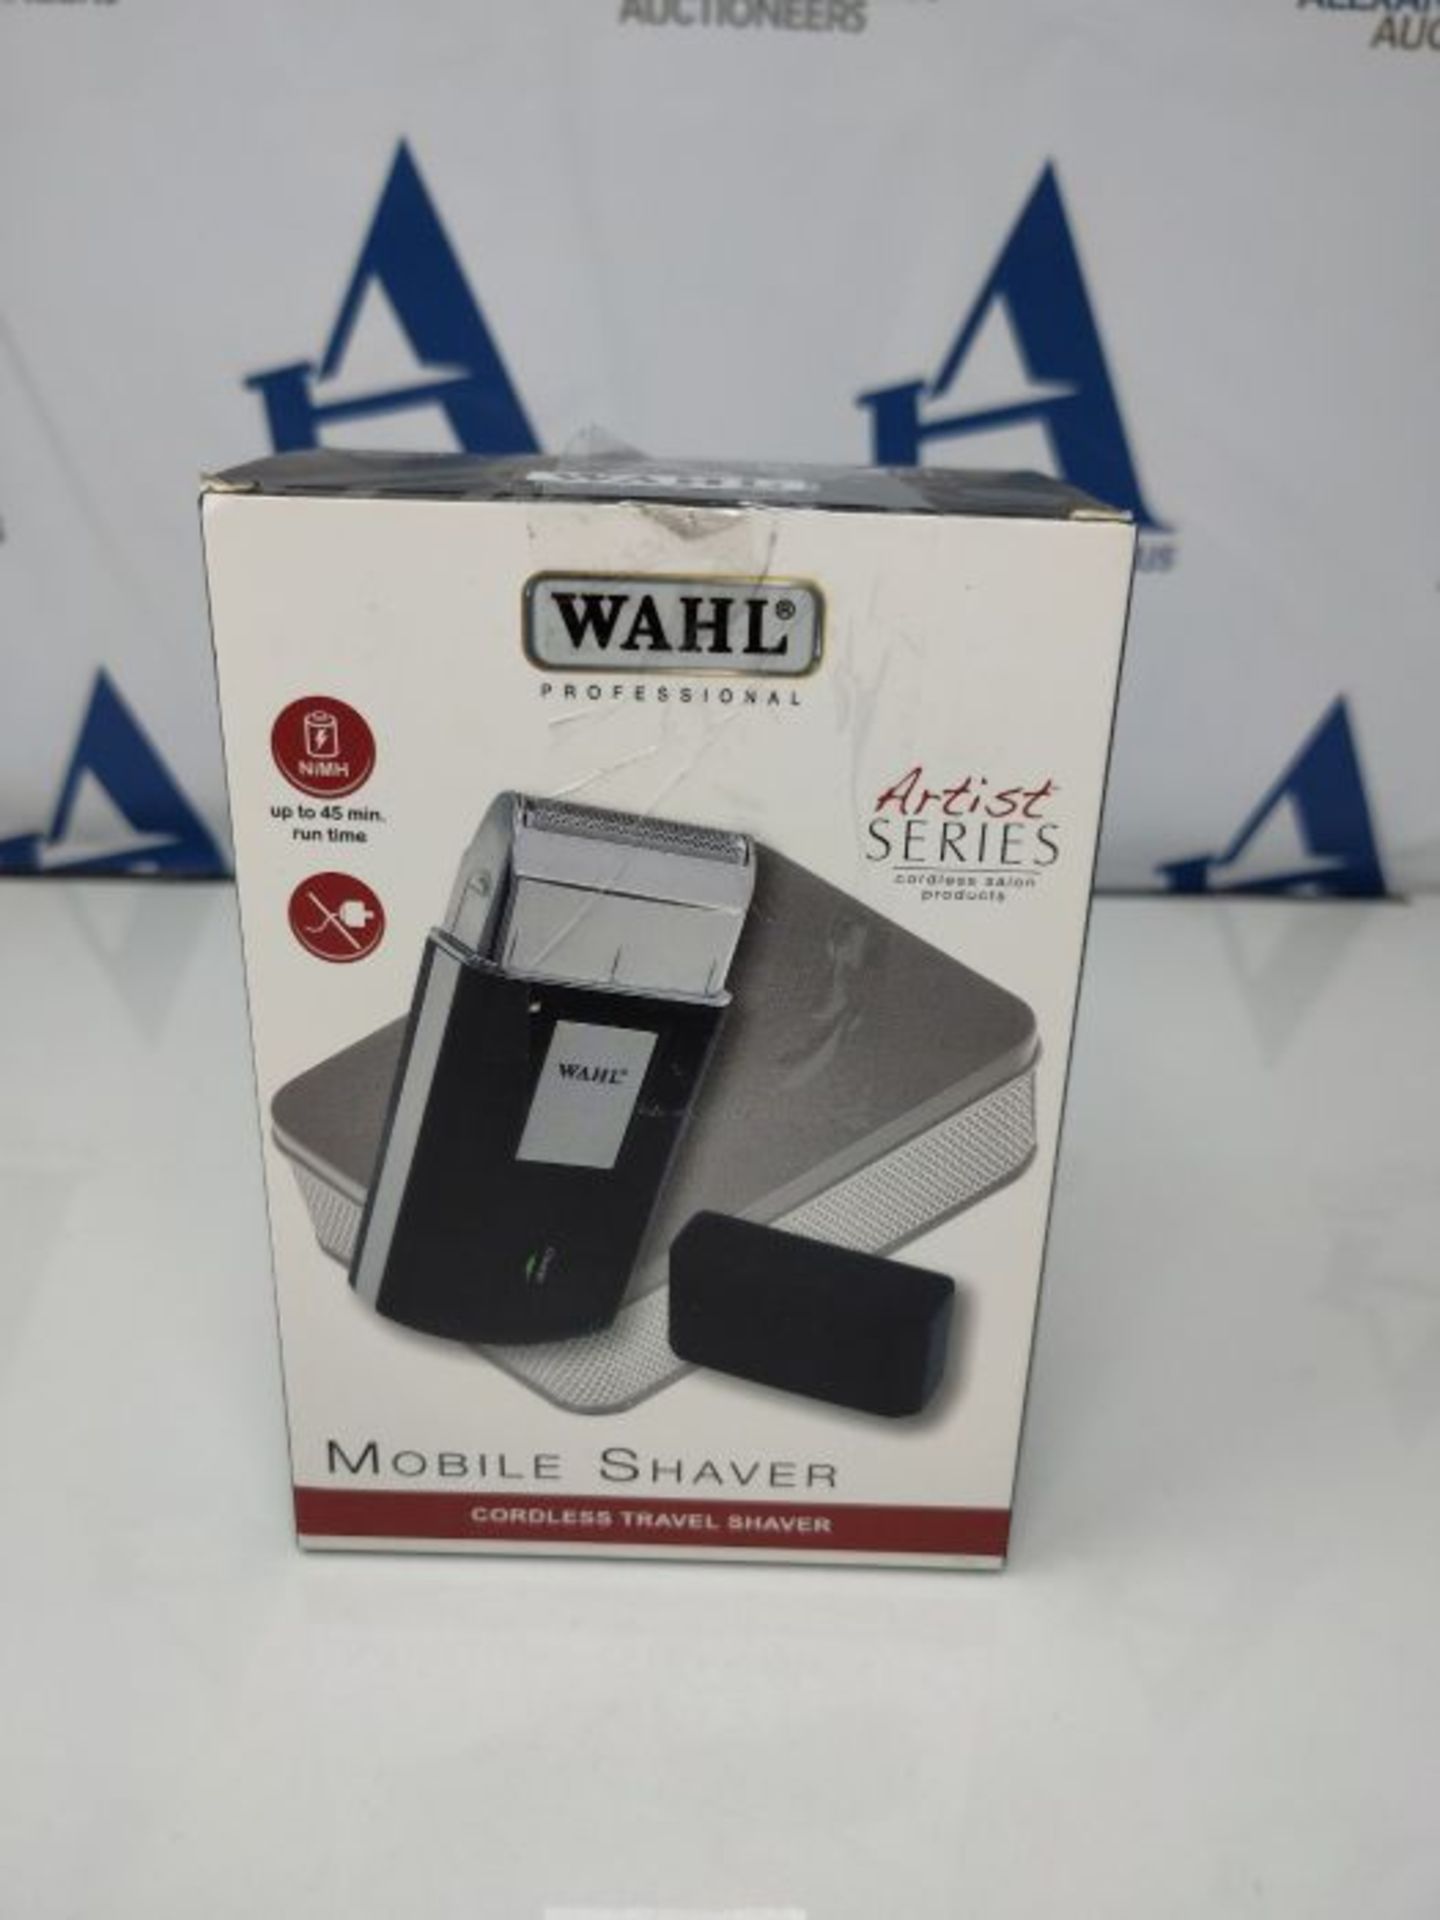 Wahl Mobile Shaver, 0.09 kg - Image 2 of 3